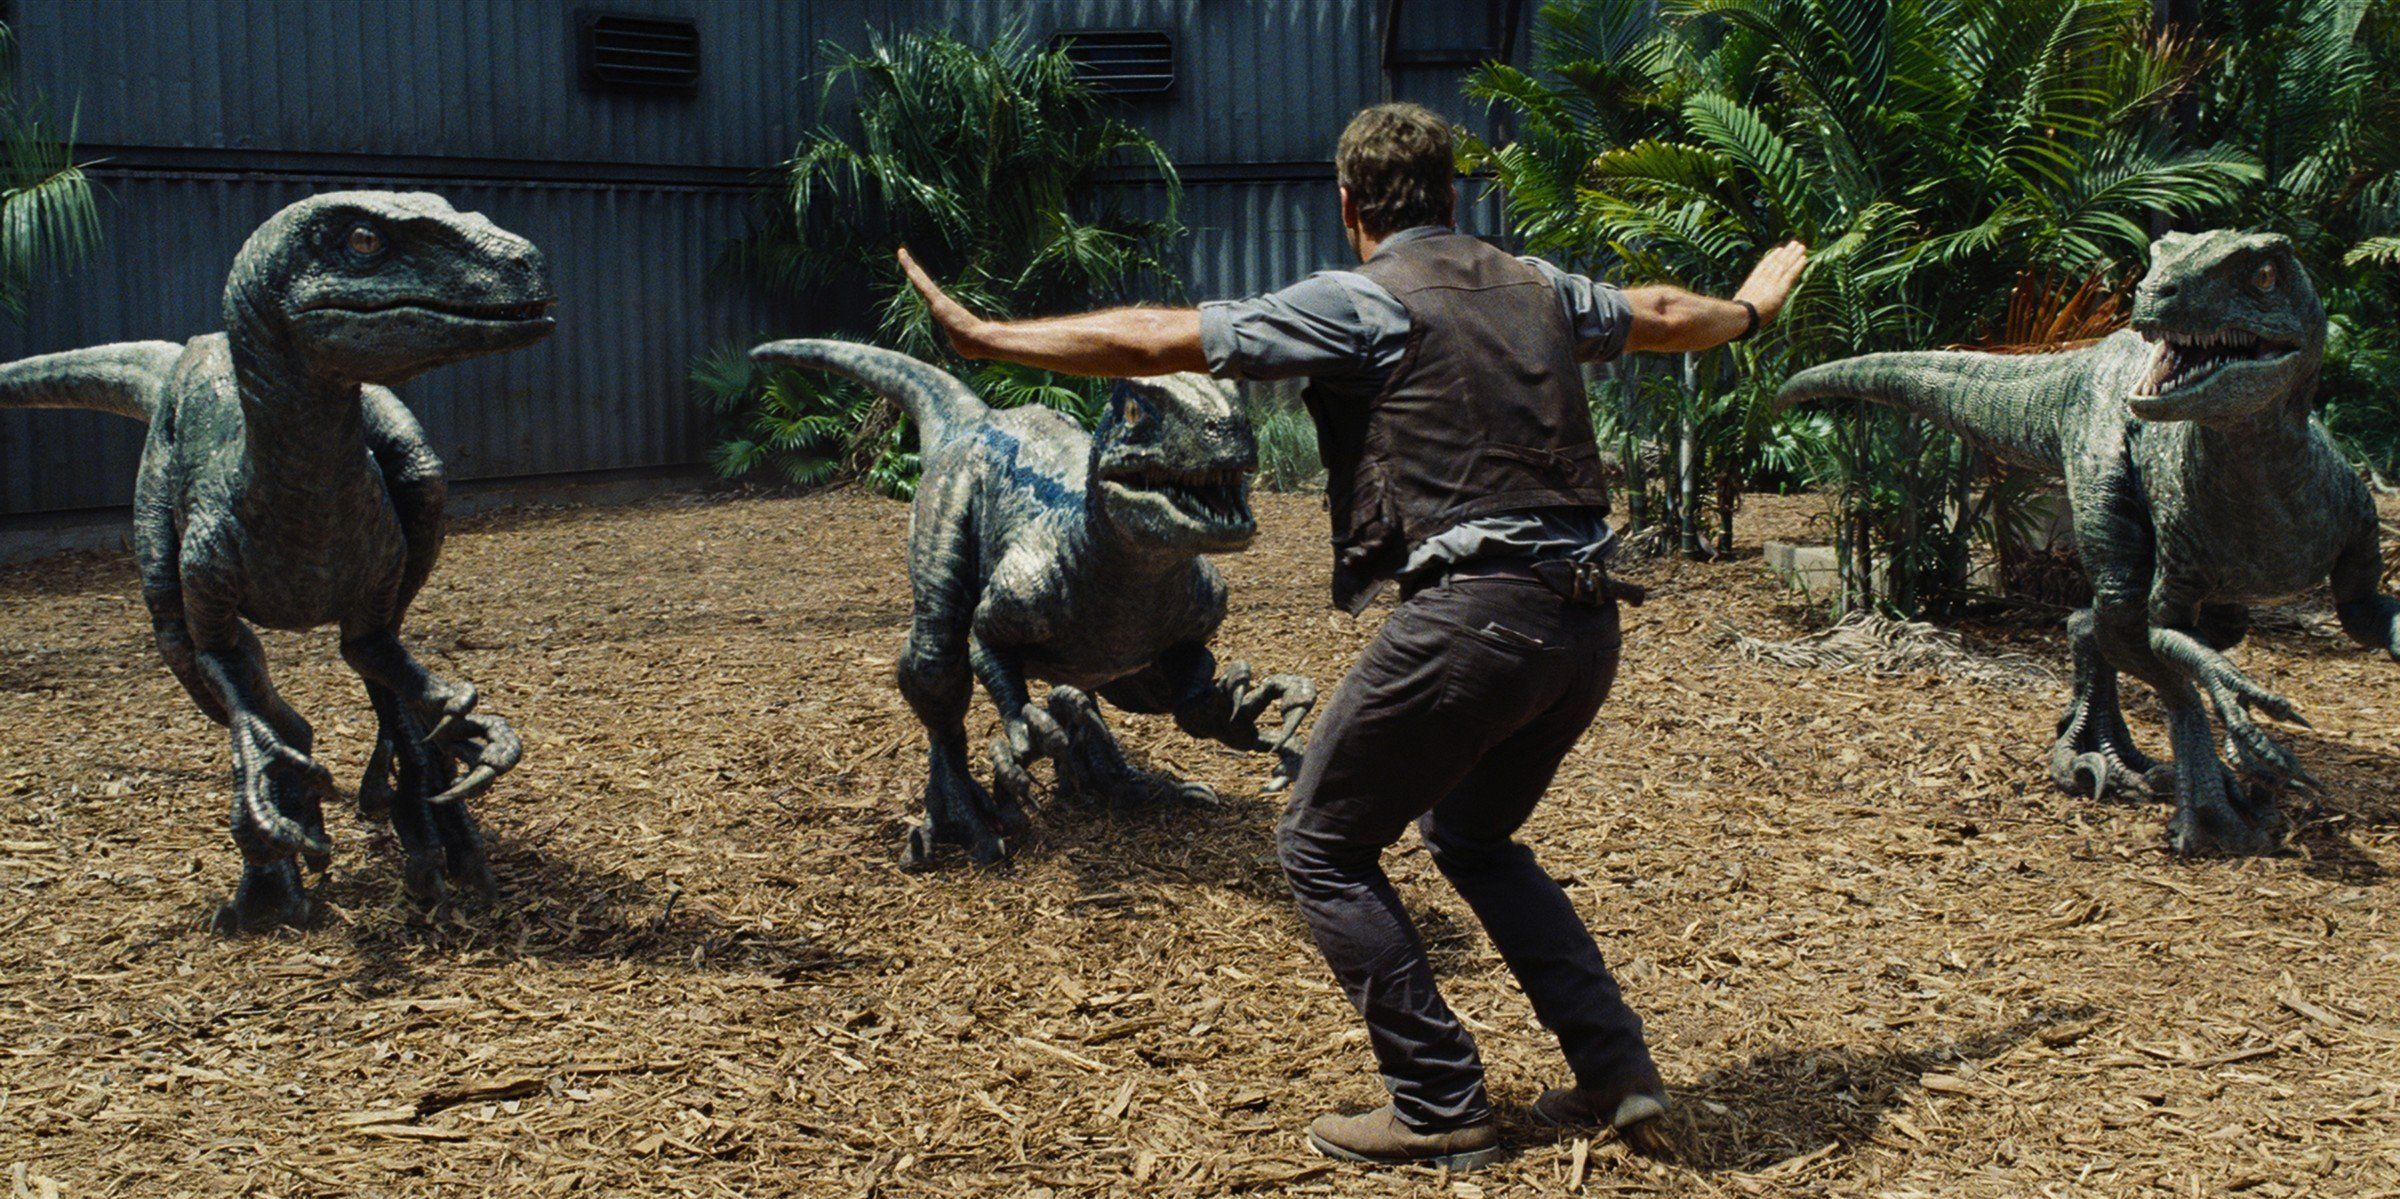 Chris Pratt Fights Dinosaurs In Jurassic World Wallpaper